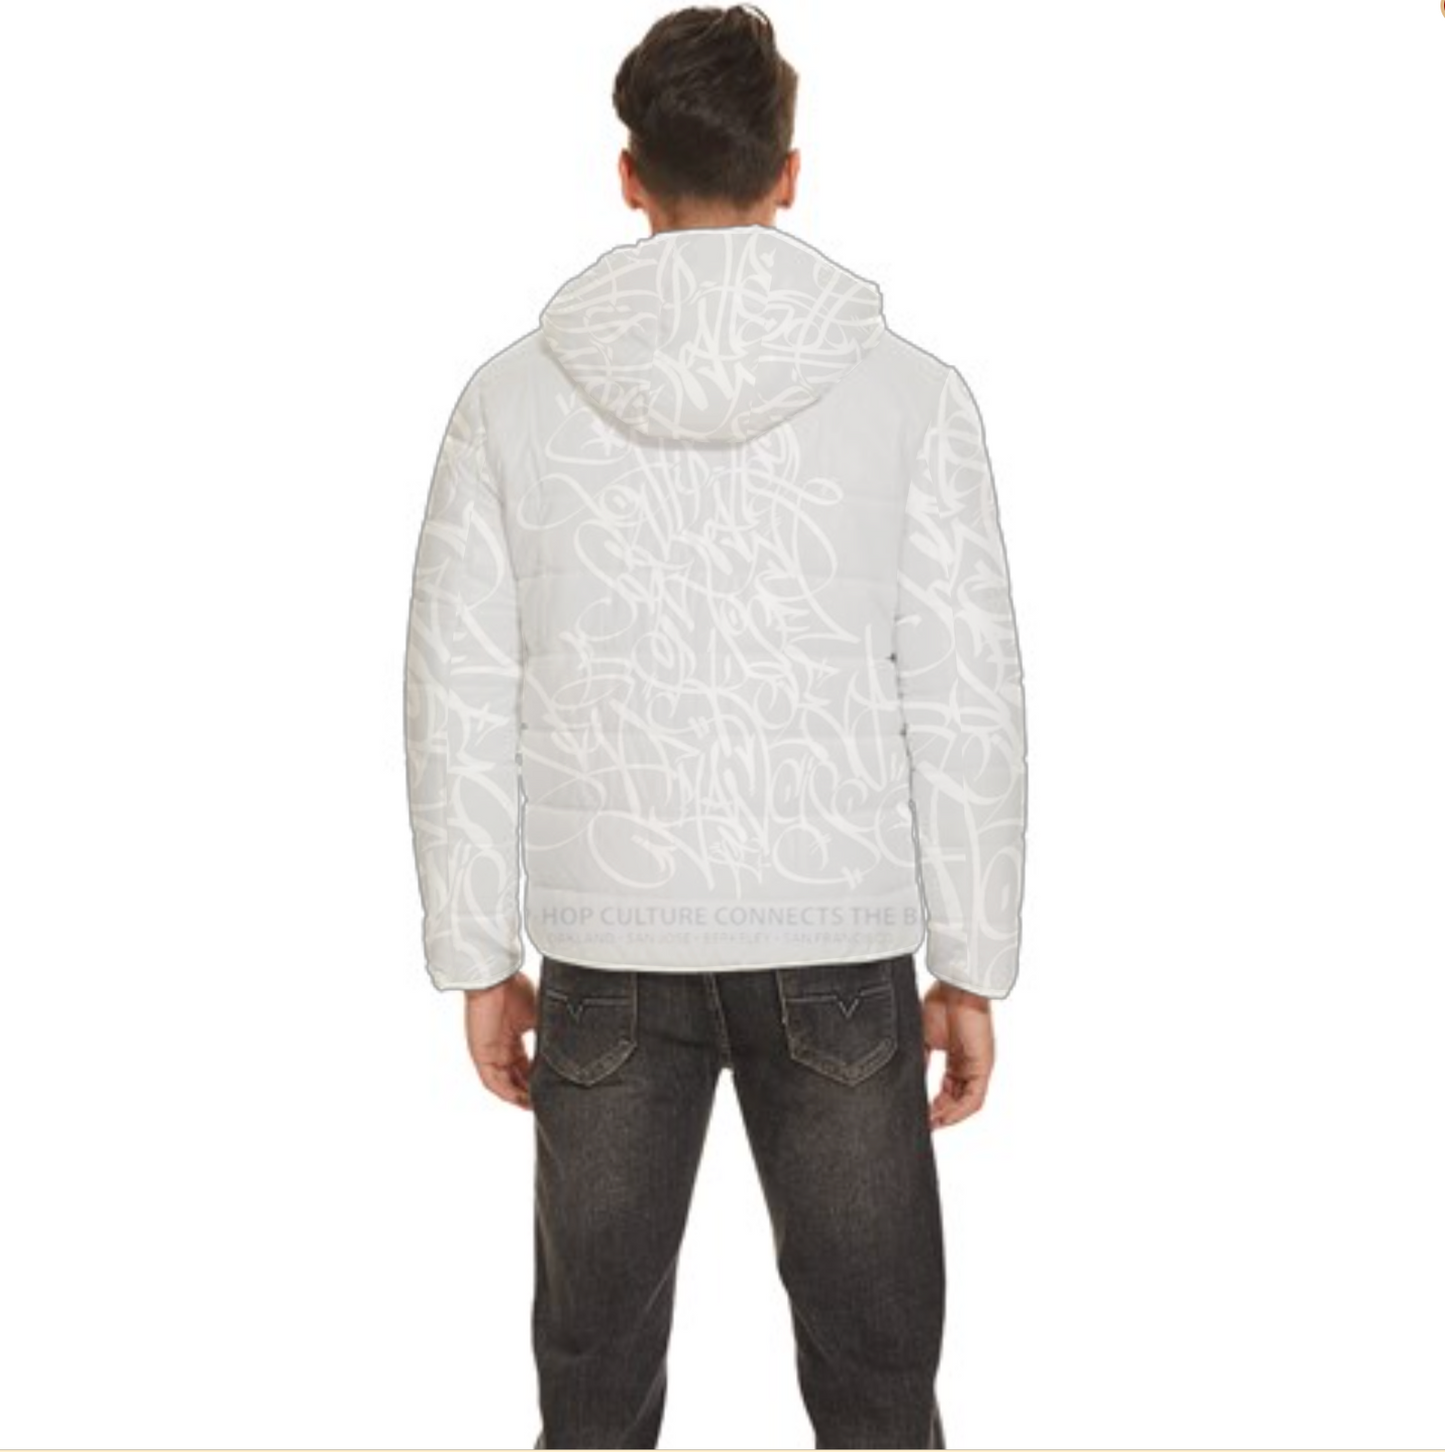 BOSS Jacket Design (White on Gray)